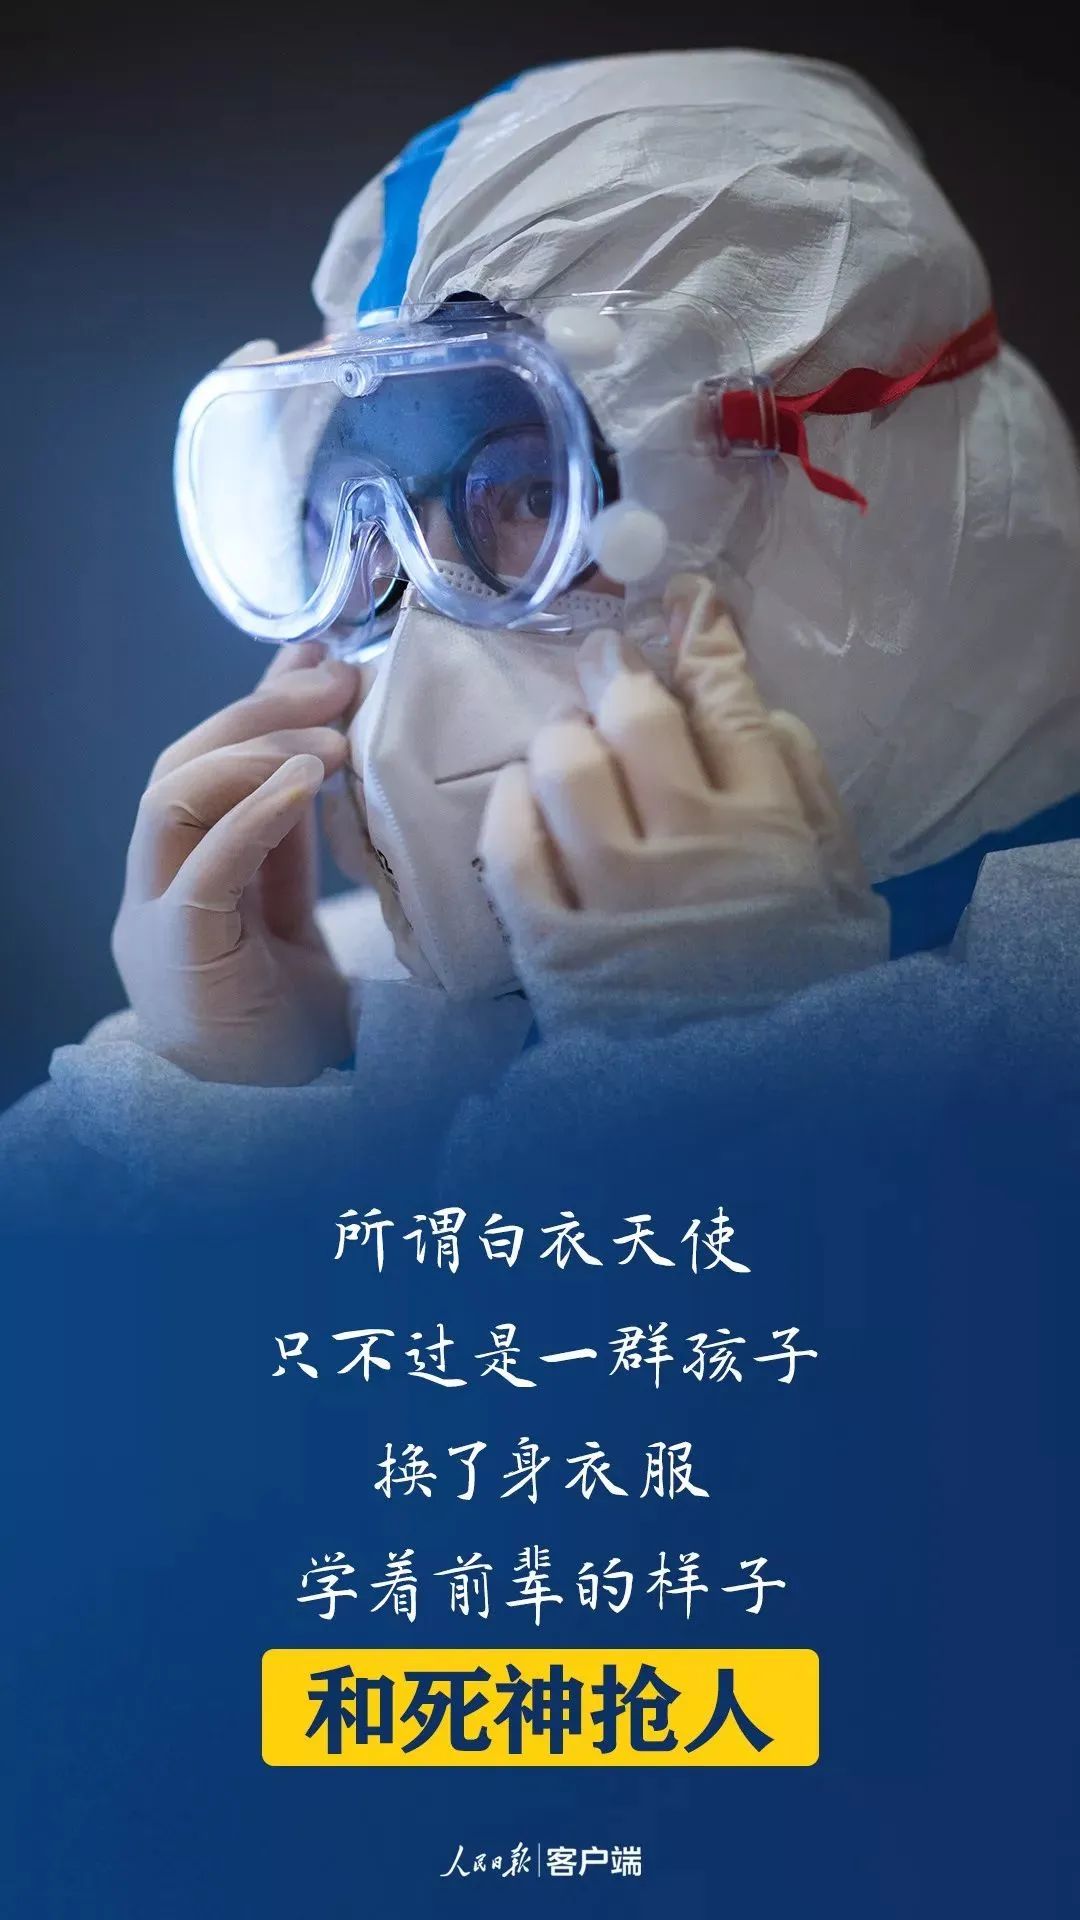 淄博市第七人民医院医护心声疫情与温暖